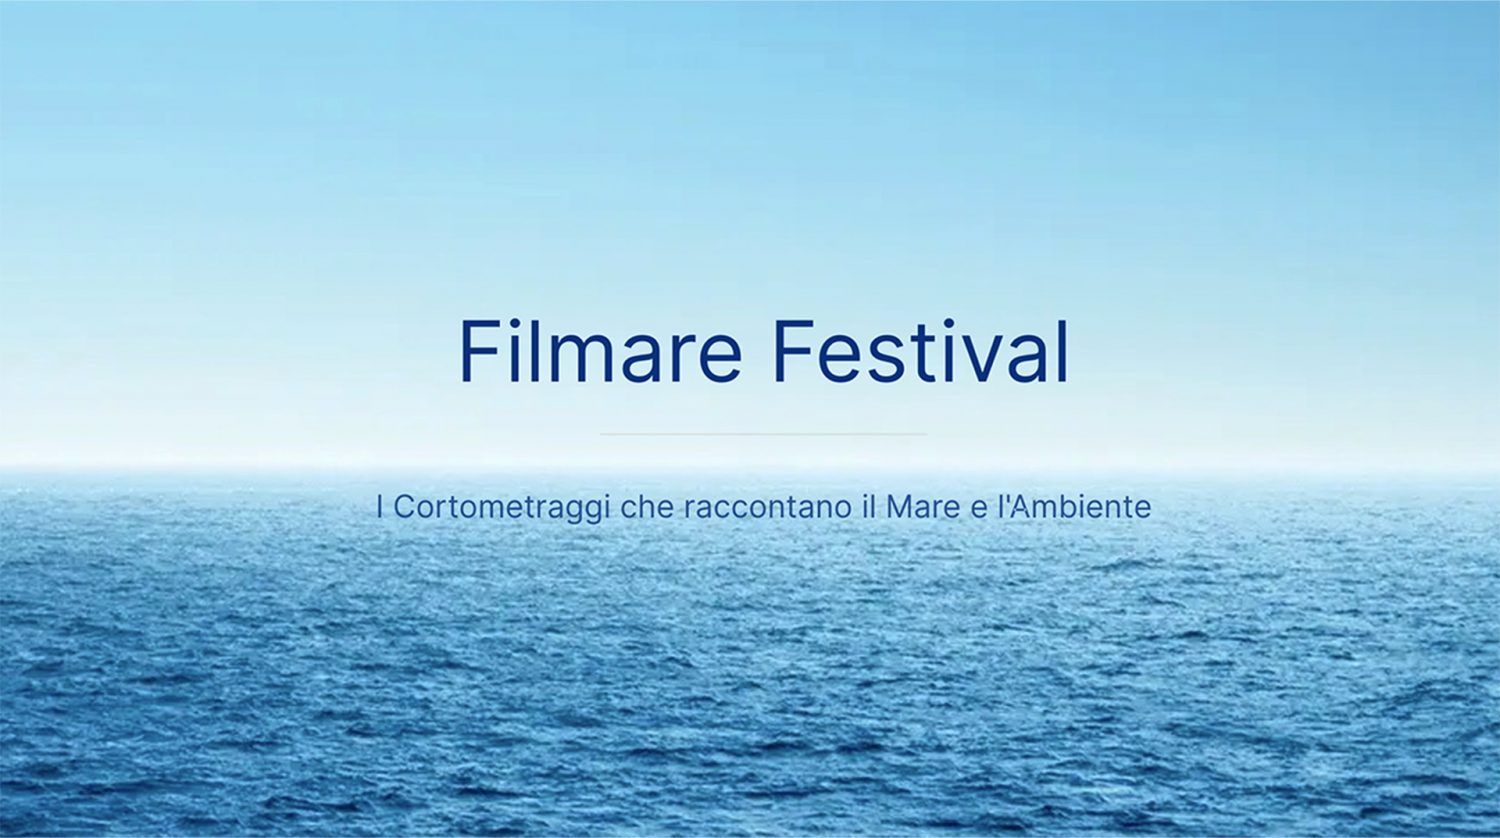 Filmare Festival, premio speciale “Un mito del cinema” a Michele Placido